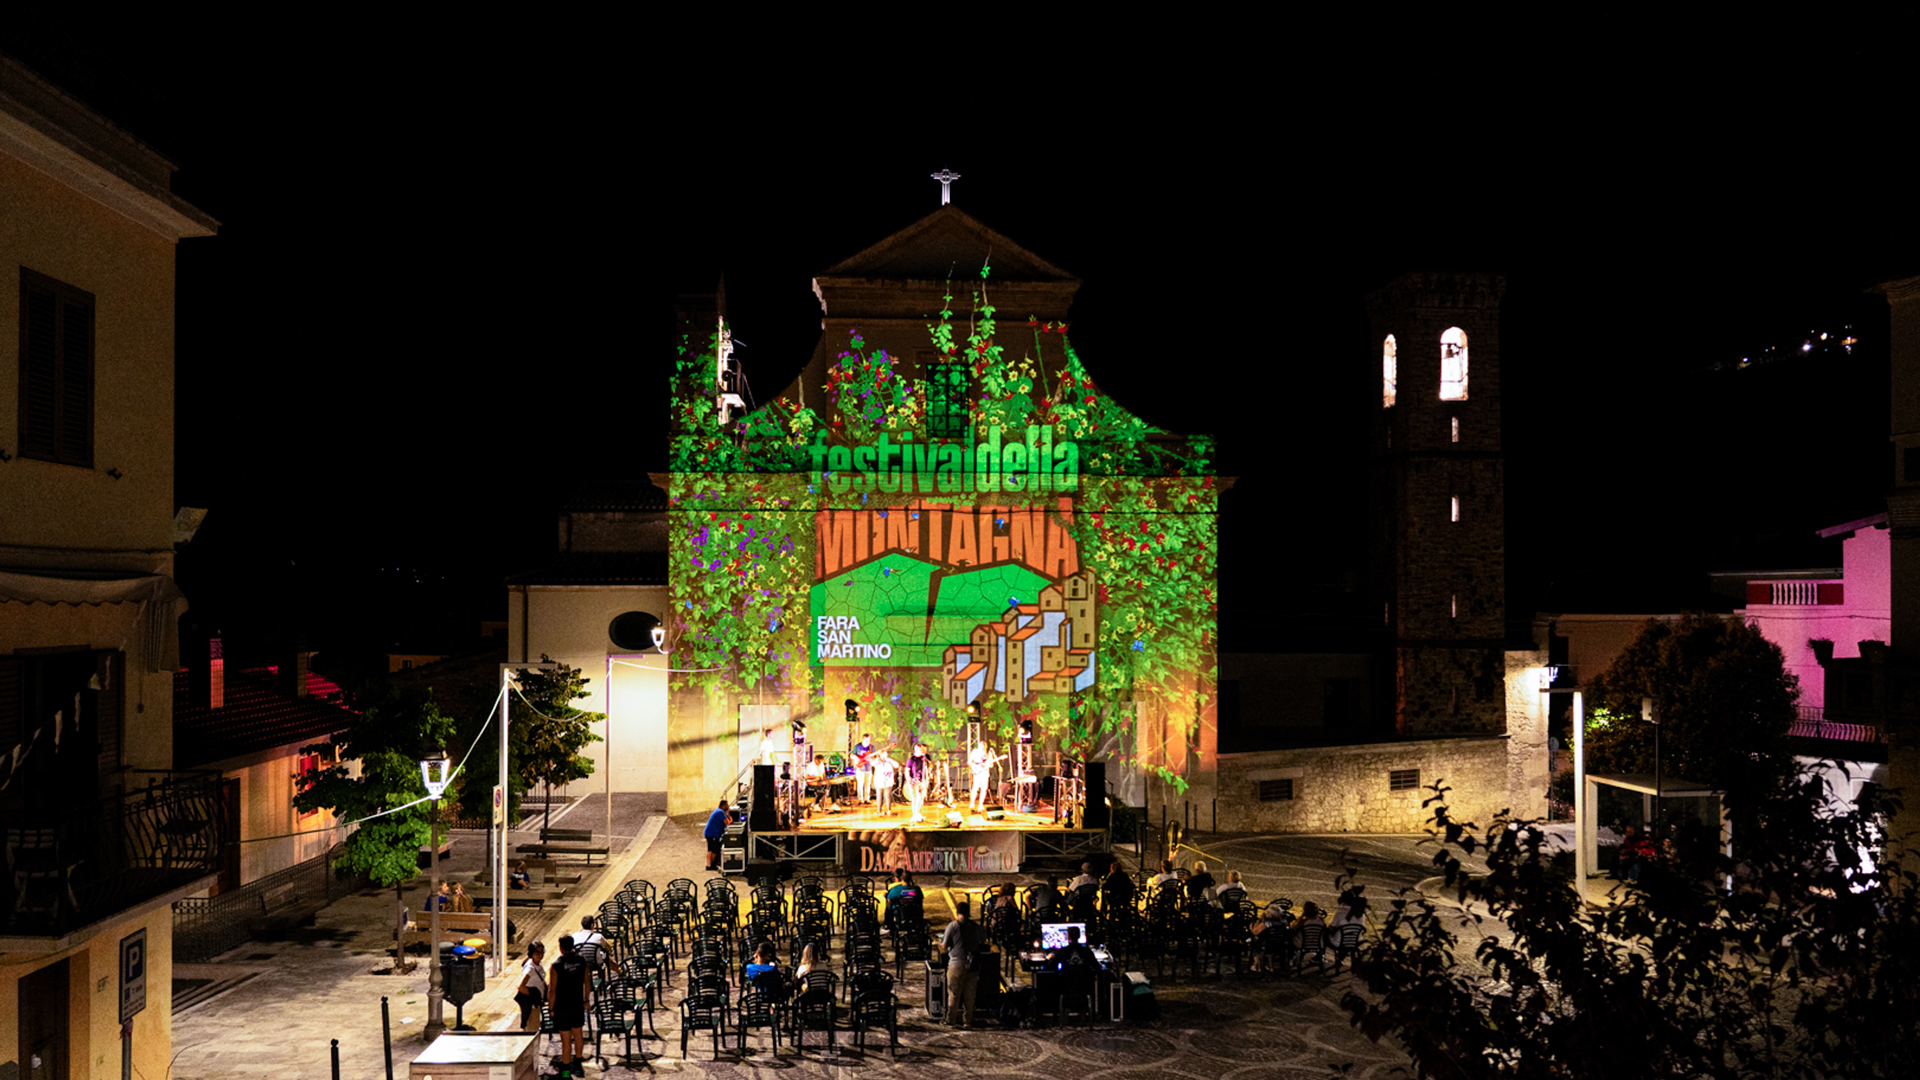 Festival Della Montagna – Video Mapping